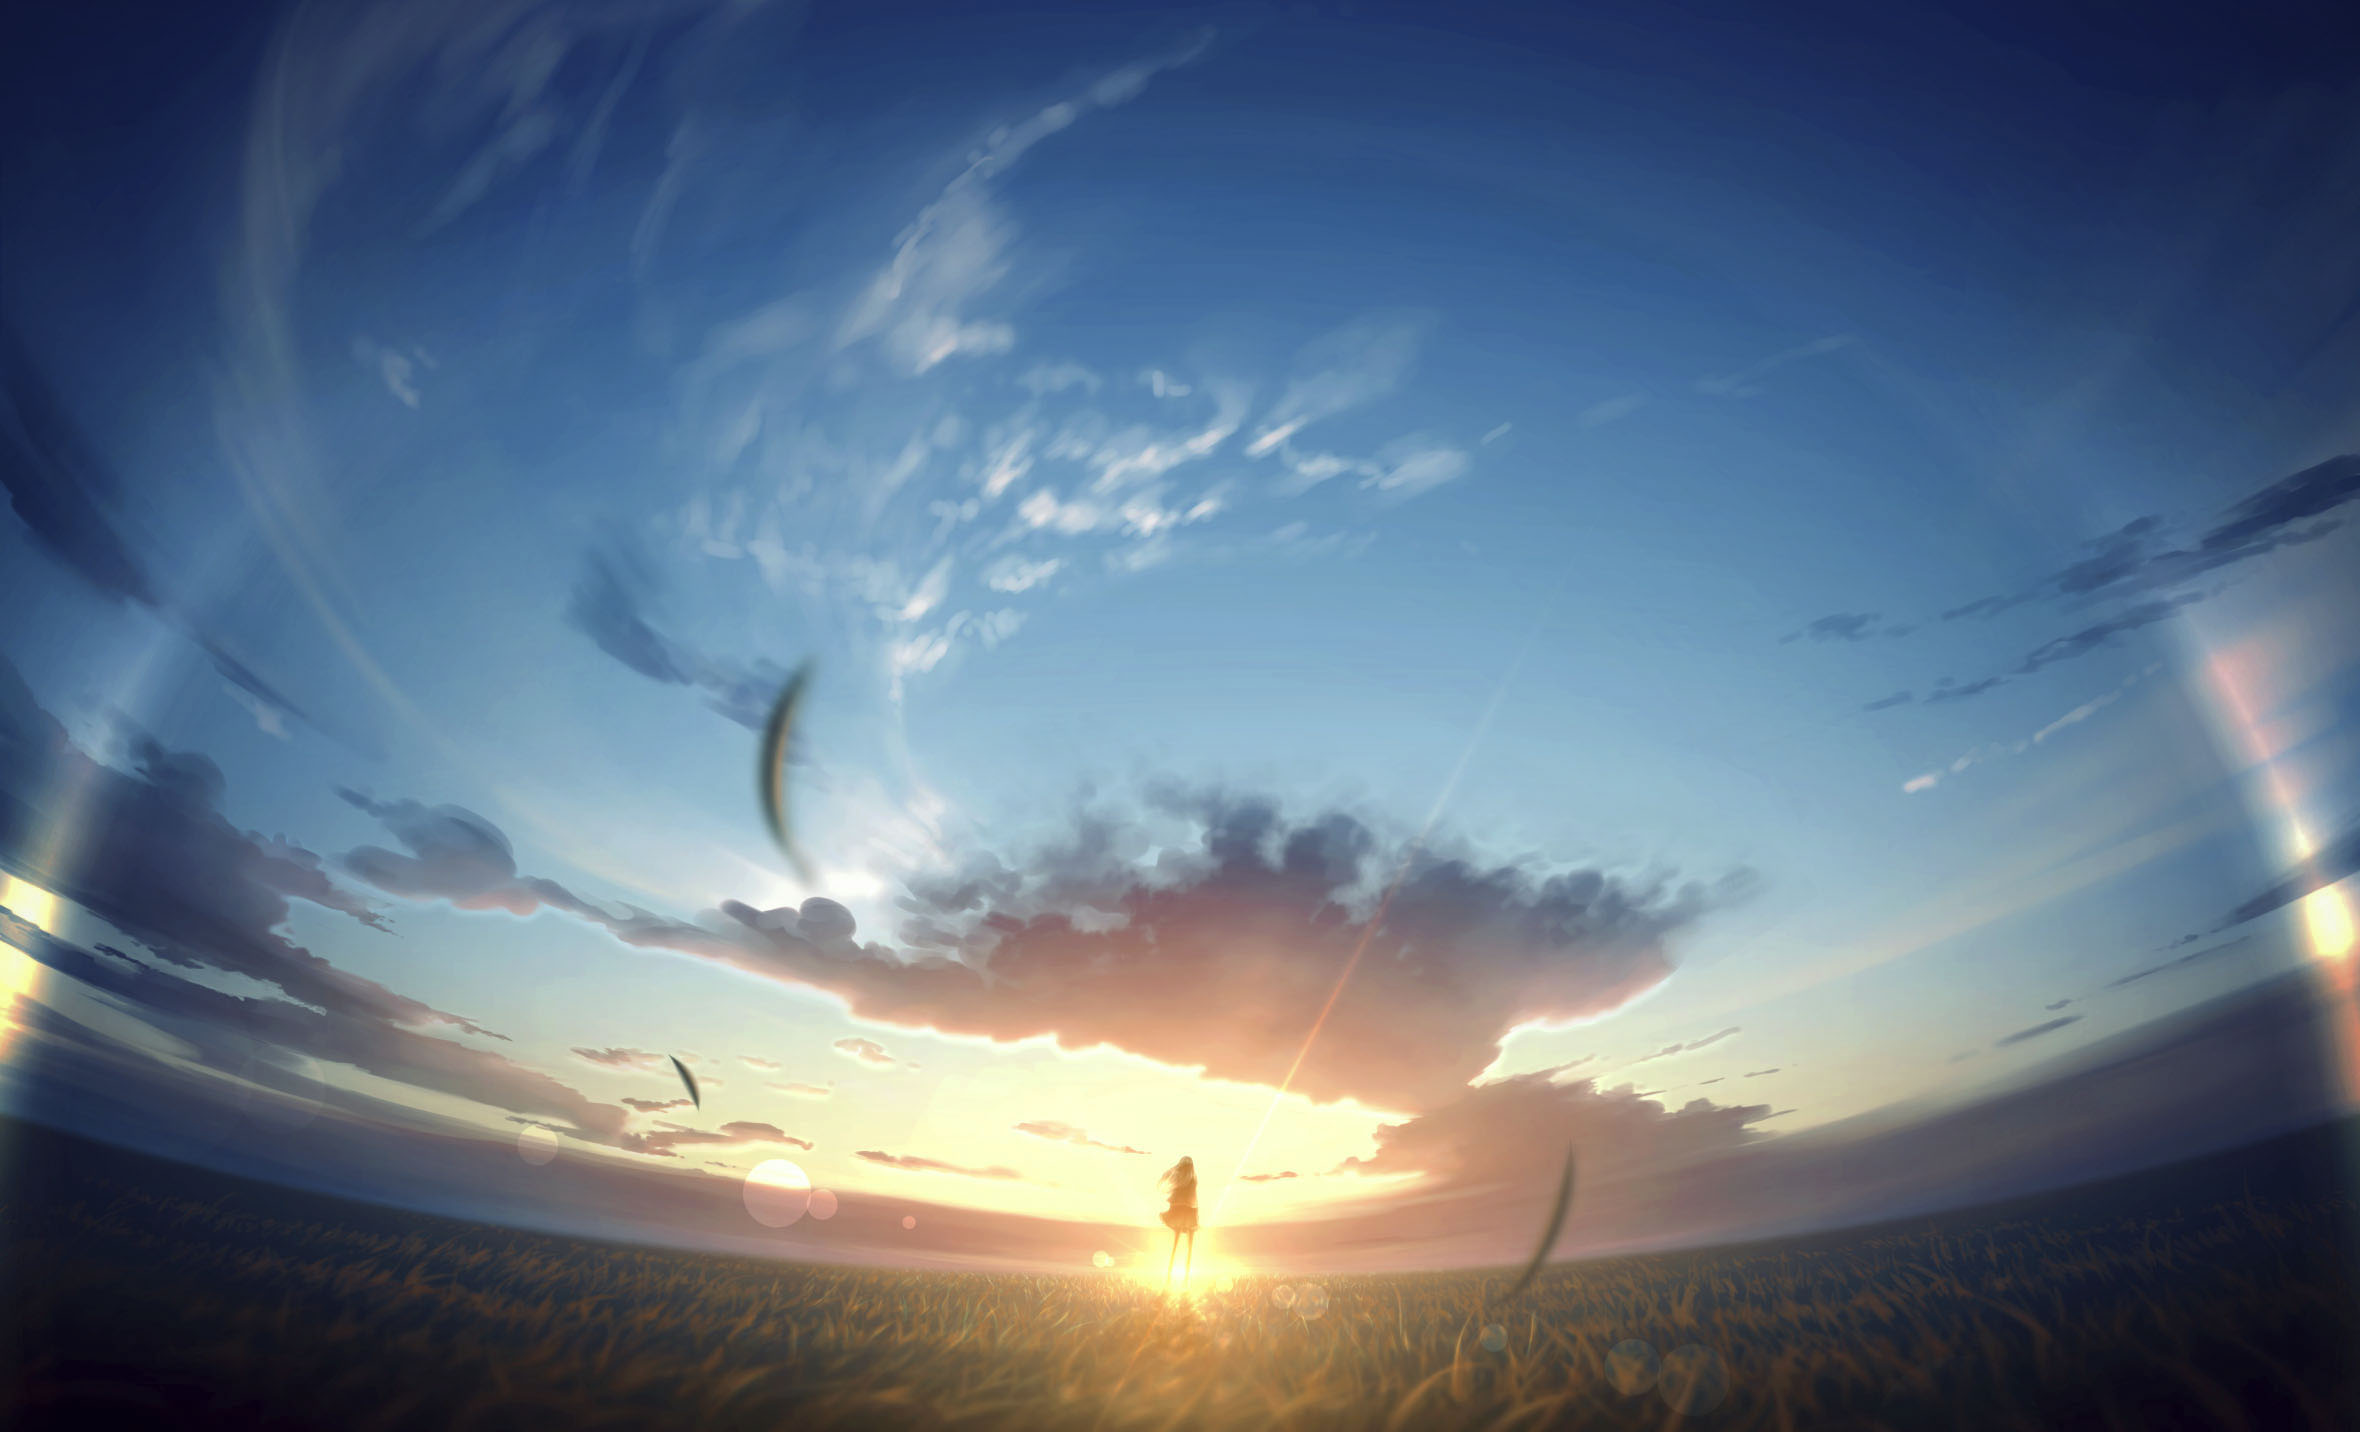 Скачать обои бесплатно Аниме, Небо, Восход Солнца картинка на рабочий стол ПК